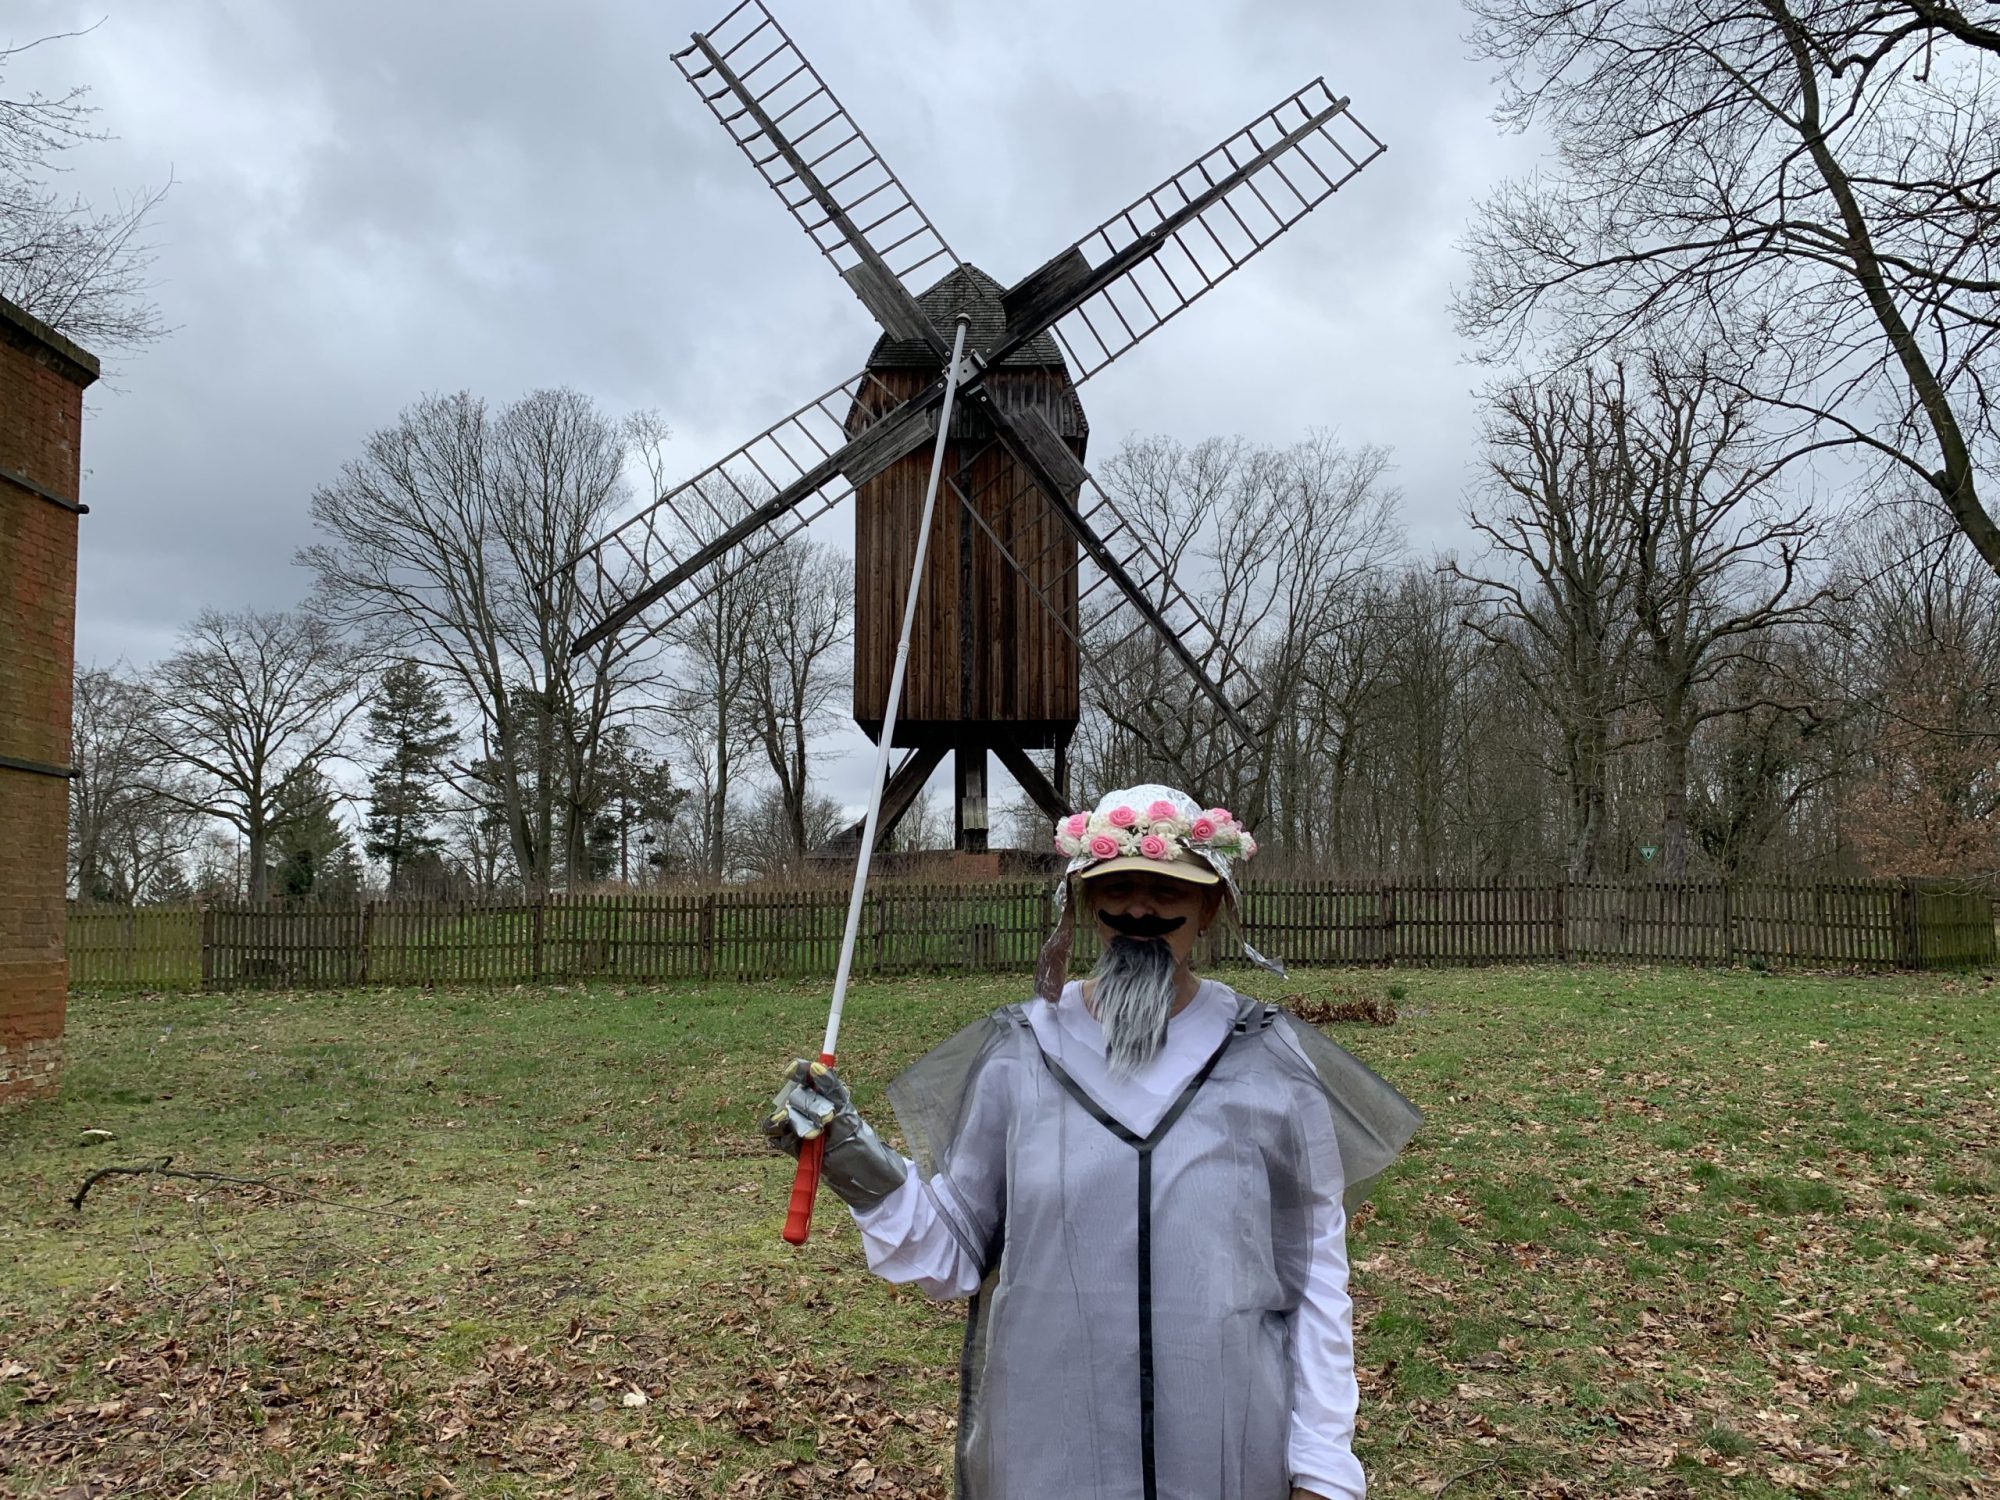 Die Blindgängerin als Don Quijote verkleidet auf einer Wiese. Sie hat einen grauen Bart und trägt einen Hut aus Alufolie mit einem Blütenkranz. Ihren weißen Langstock hält sie empor. Im Hintergrund eine Windmühle auf einem Grashügel.